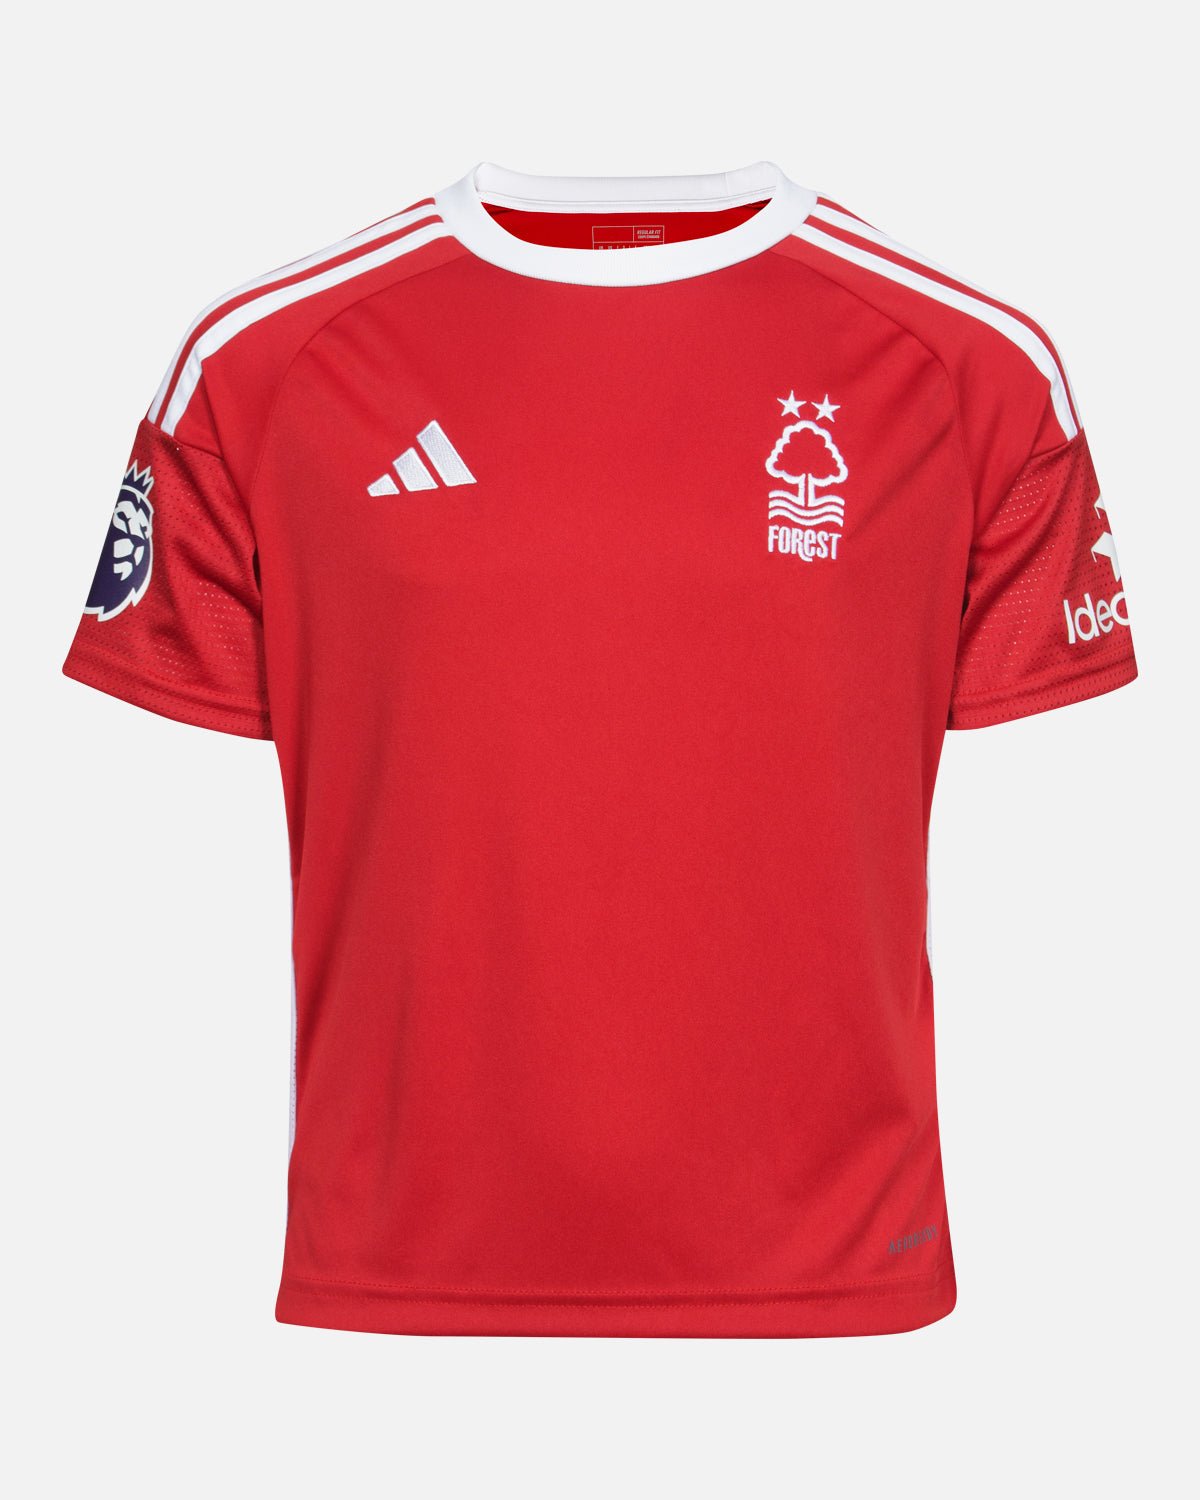 NFFC Junior Home Shirt 23-24 - Omobamidele 32 - Nottingham Forest FC